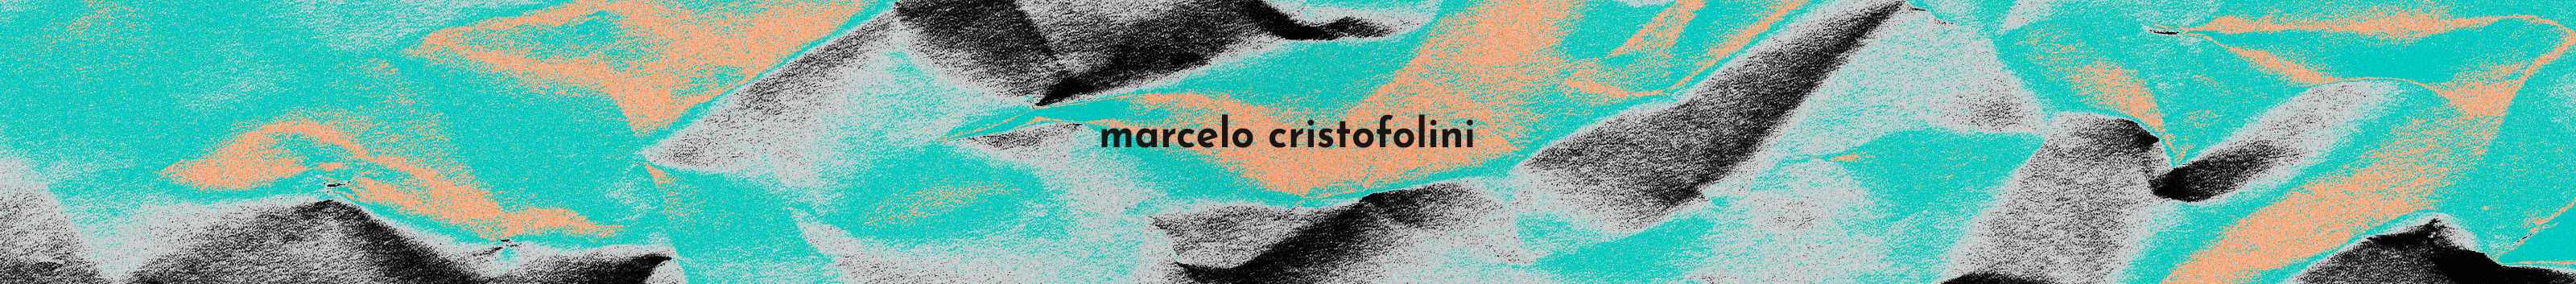 Marcelo Cristofolini's profile banner